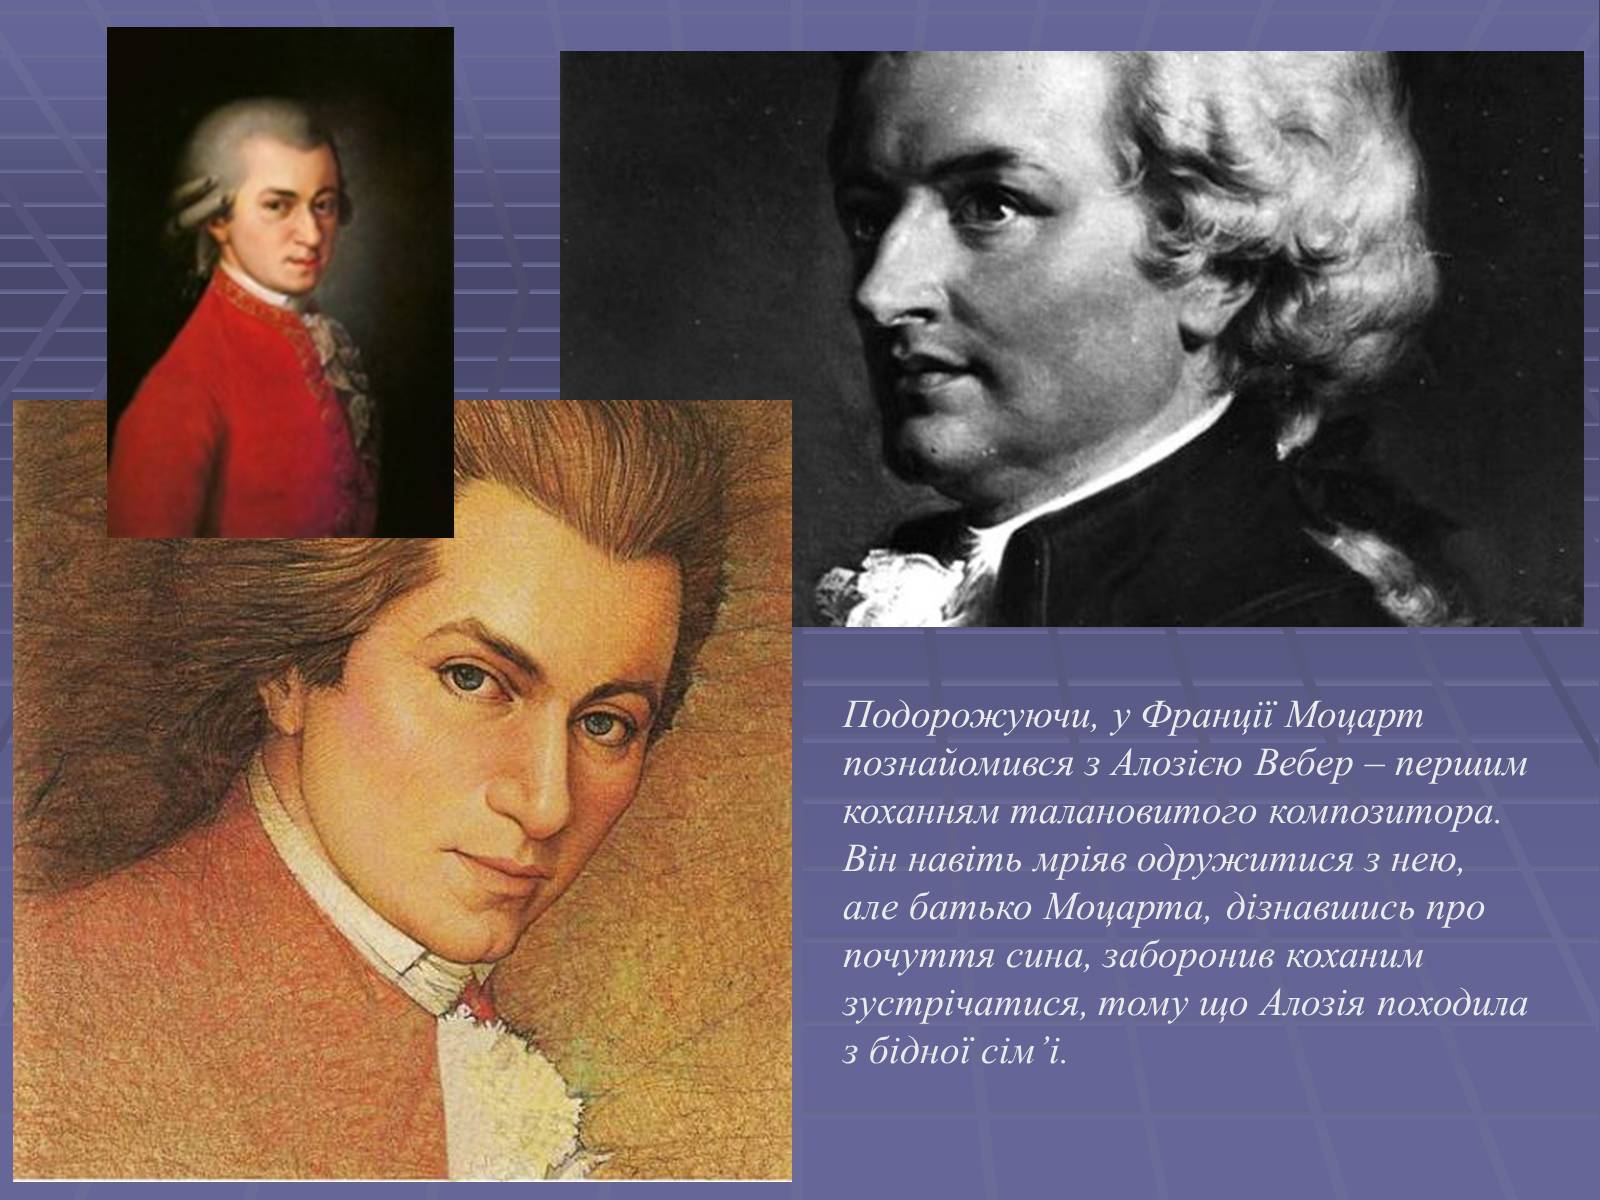 Биография Моцарта. Биография Моцарта кратко. Произведения Моцарта самые известные.